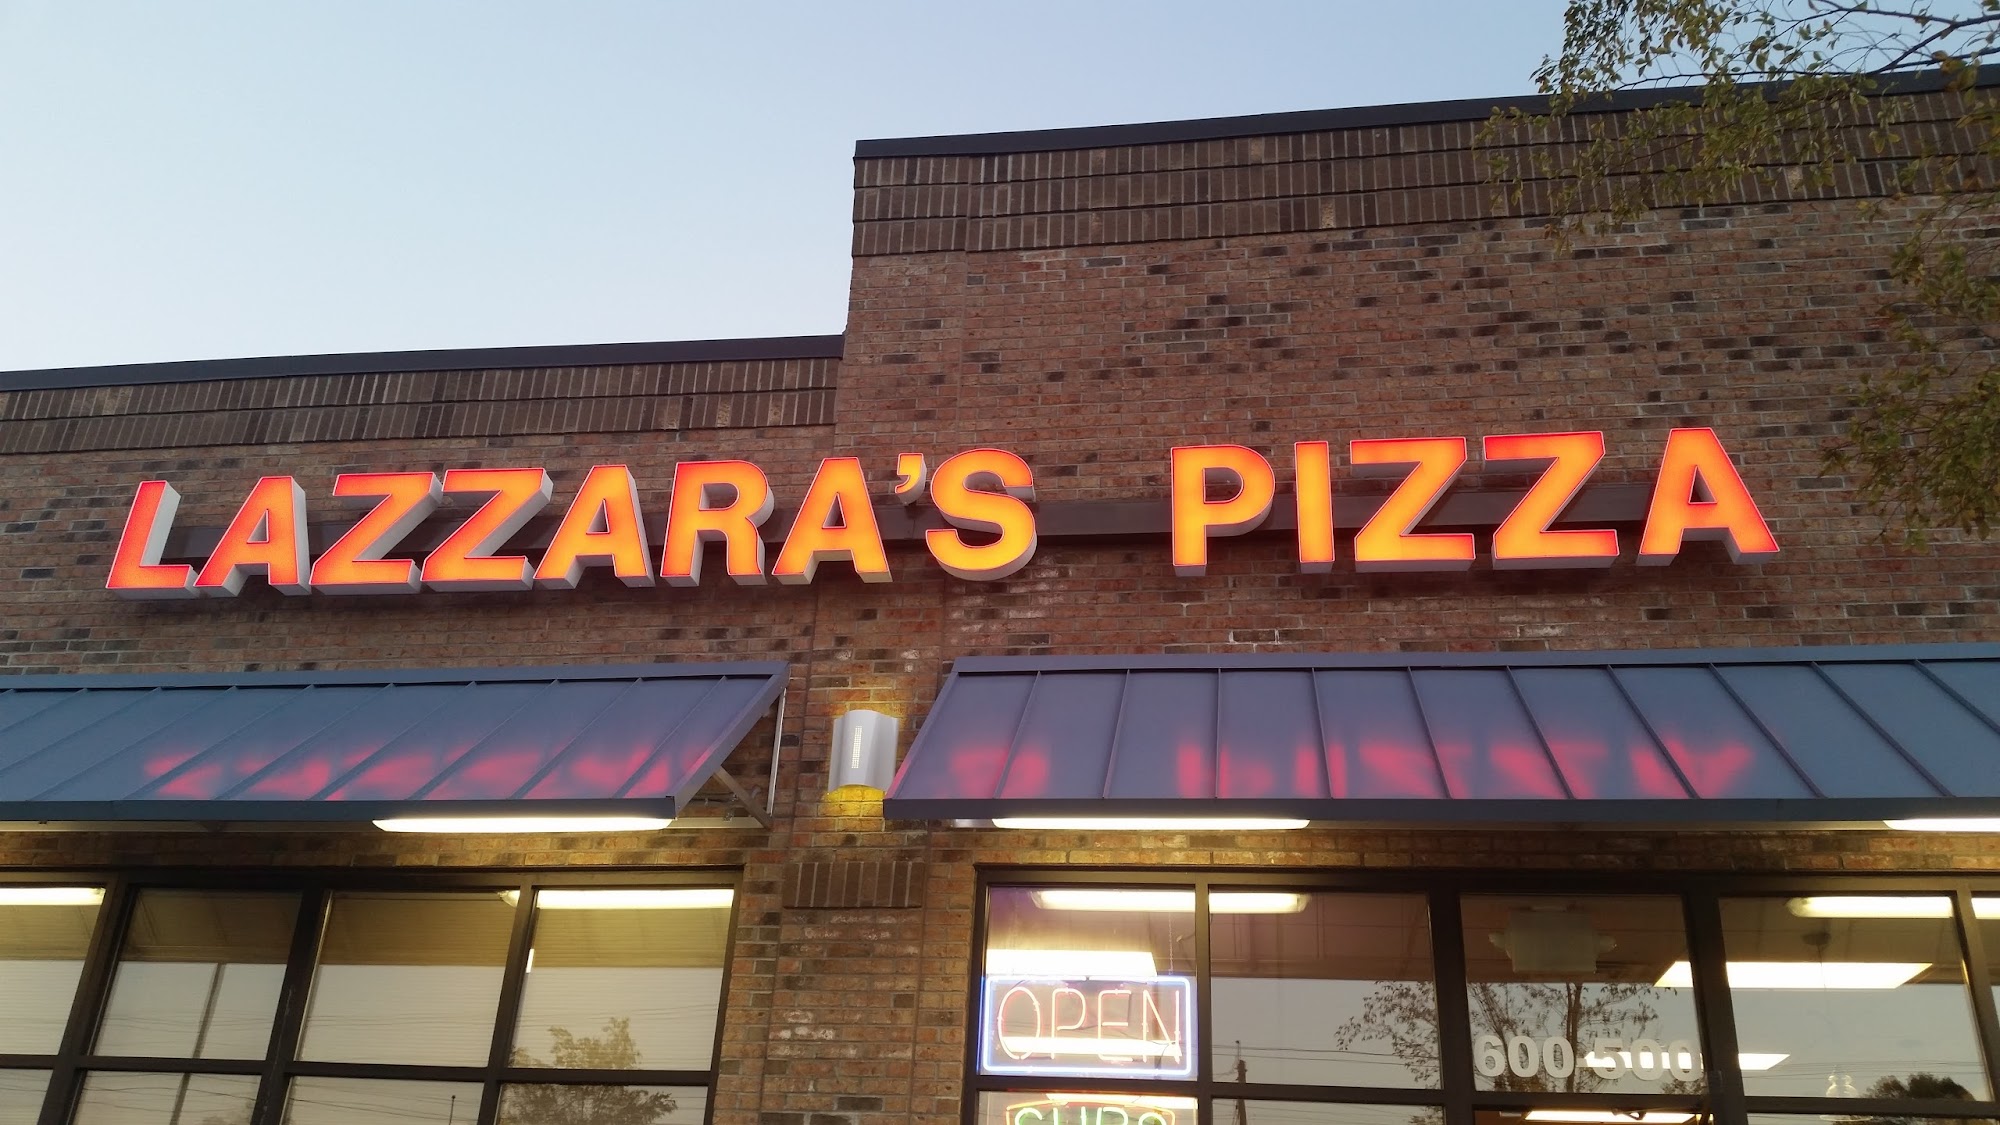 Lazzara's Pizza & Subs